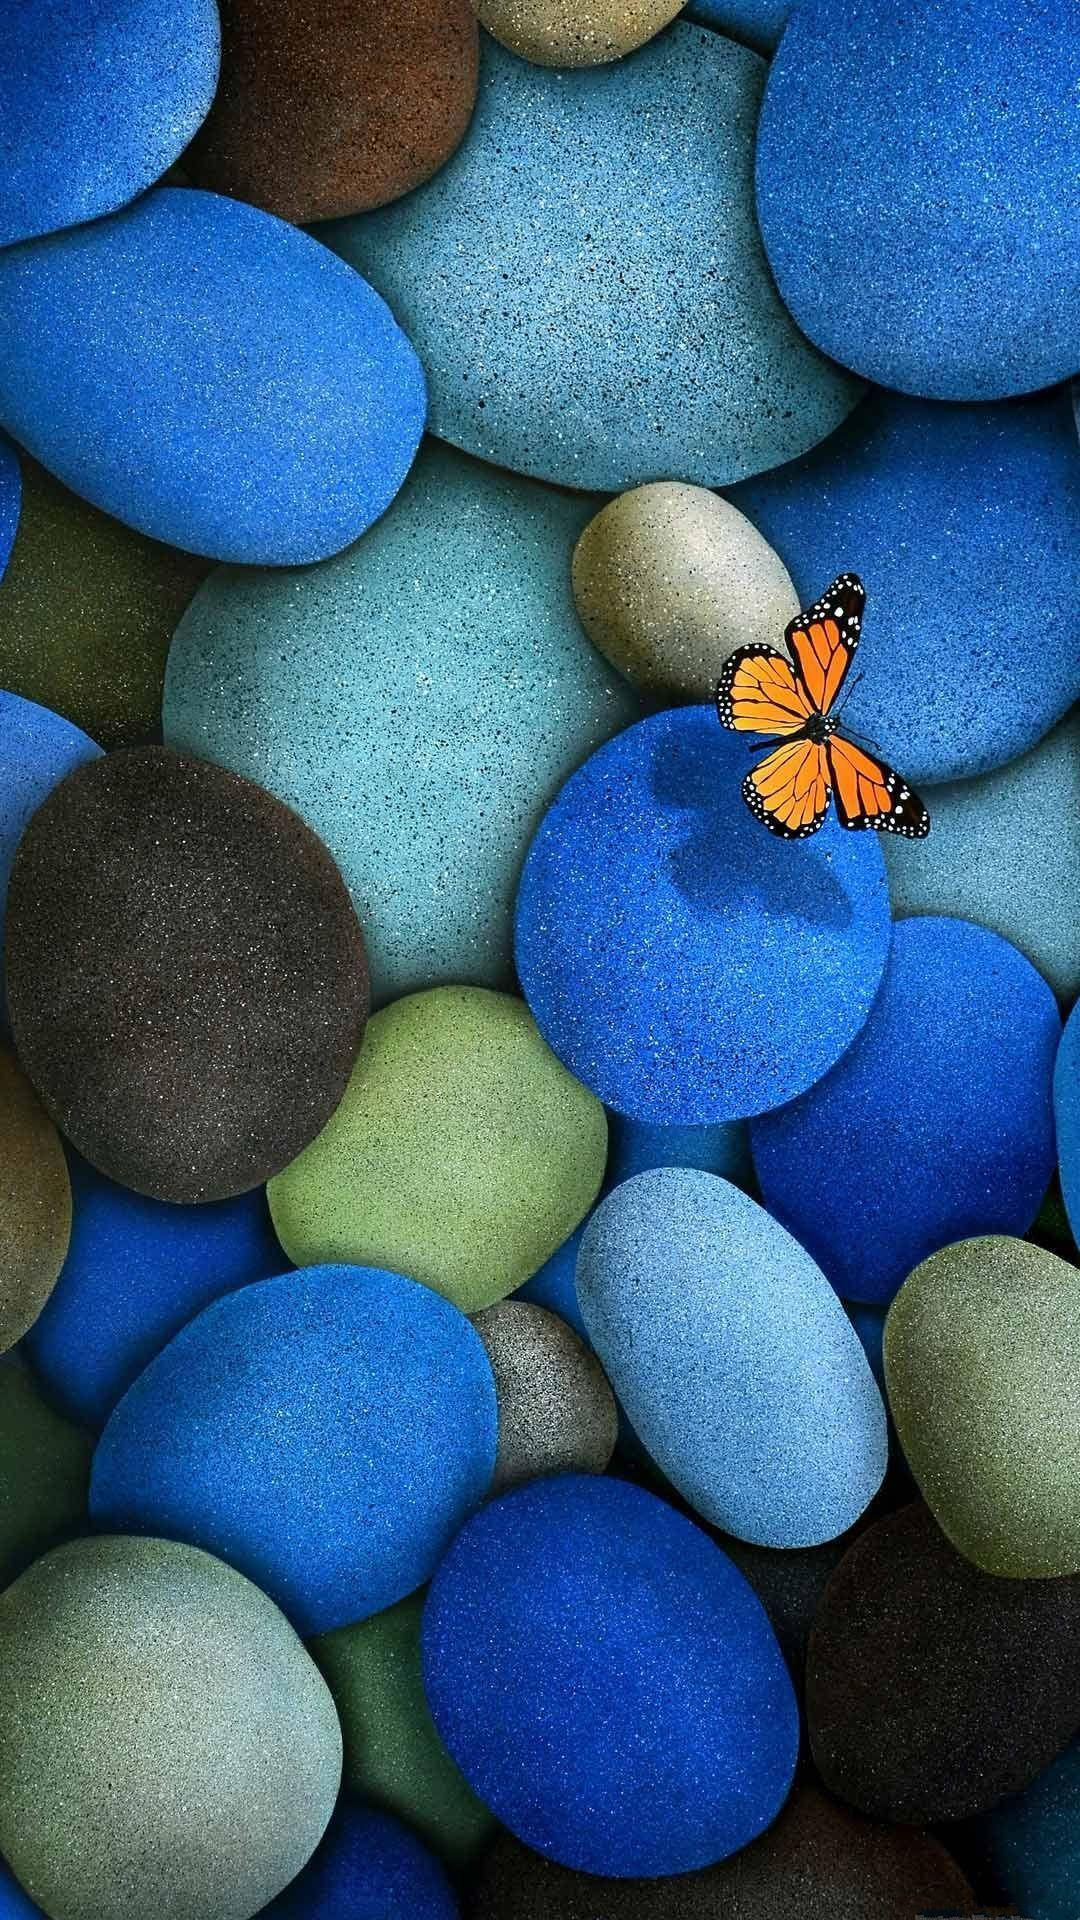 Samsunggalaxy 4k Blaue Kieselsteine Und Ein Schmetterling Wallpaper